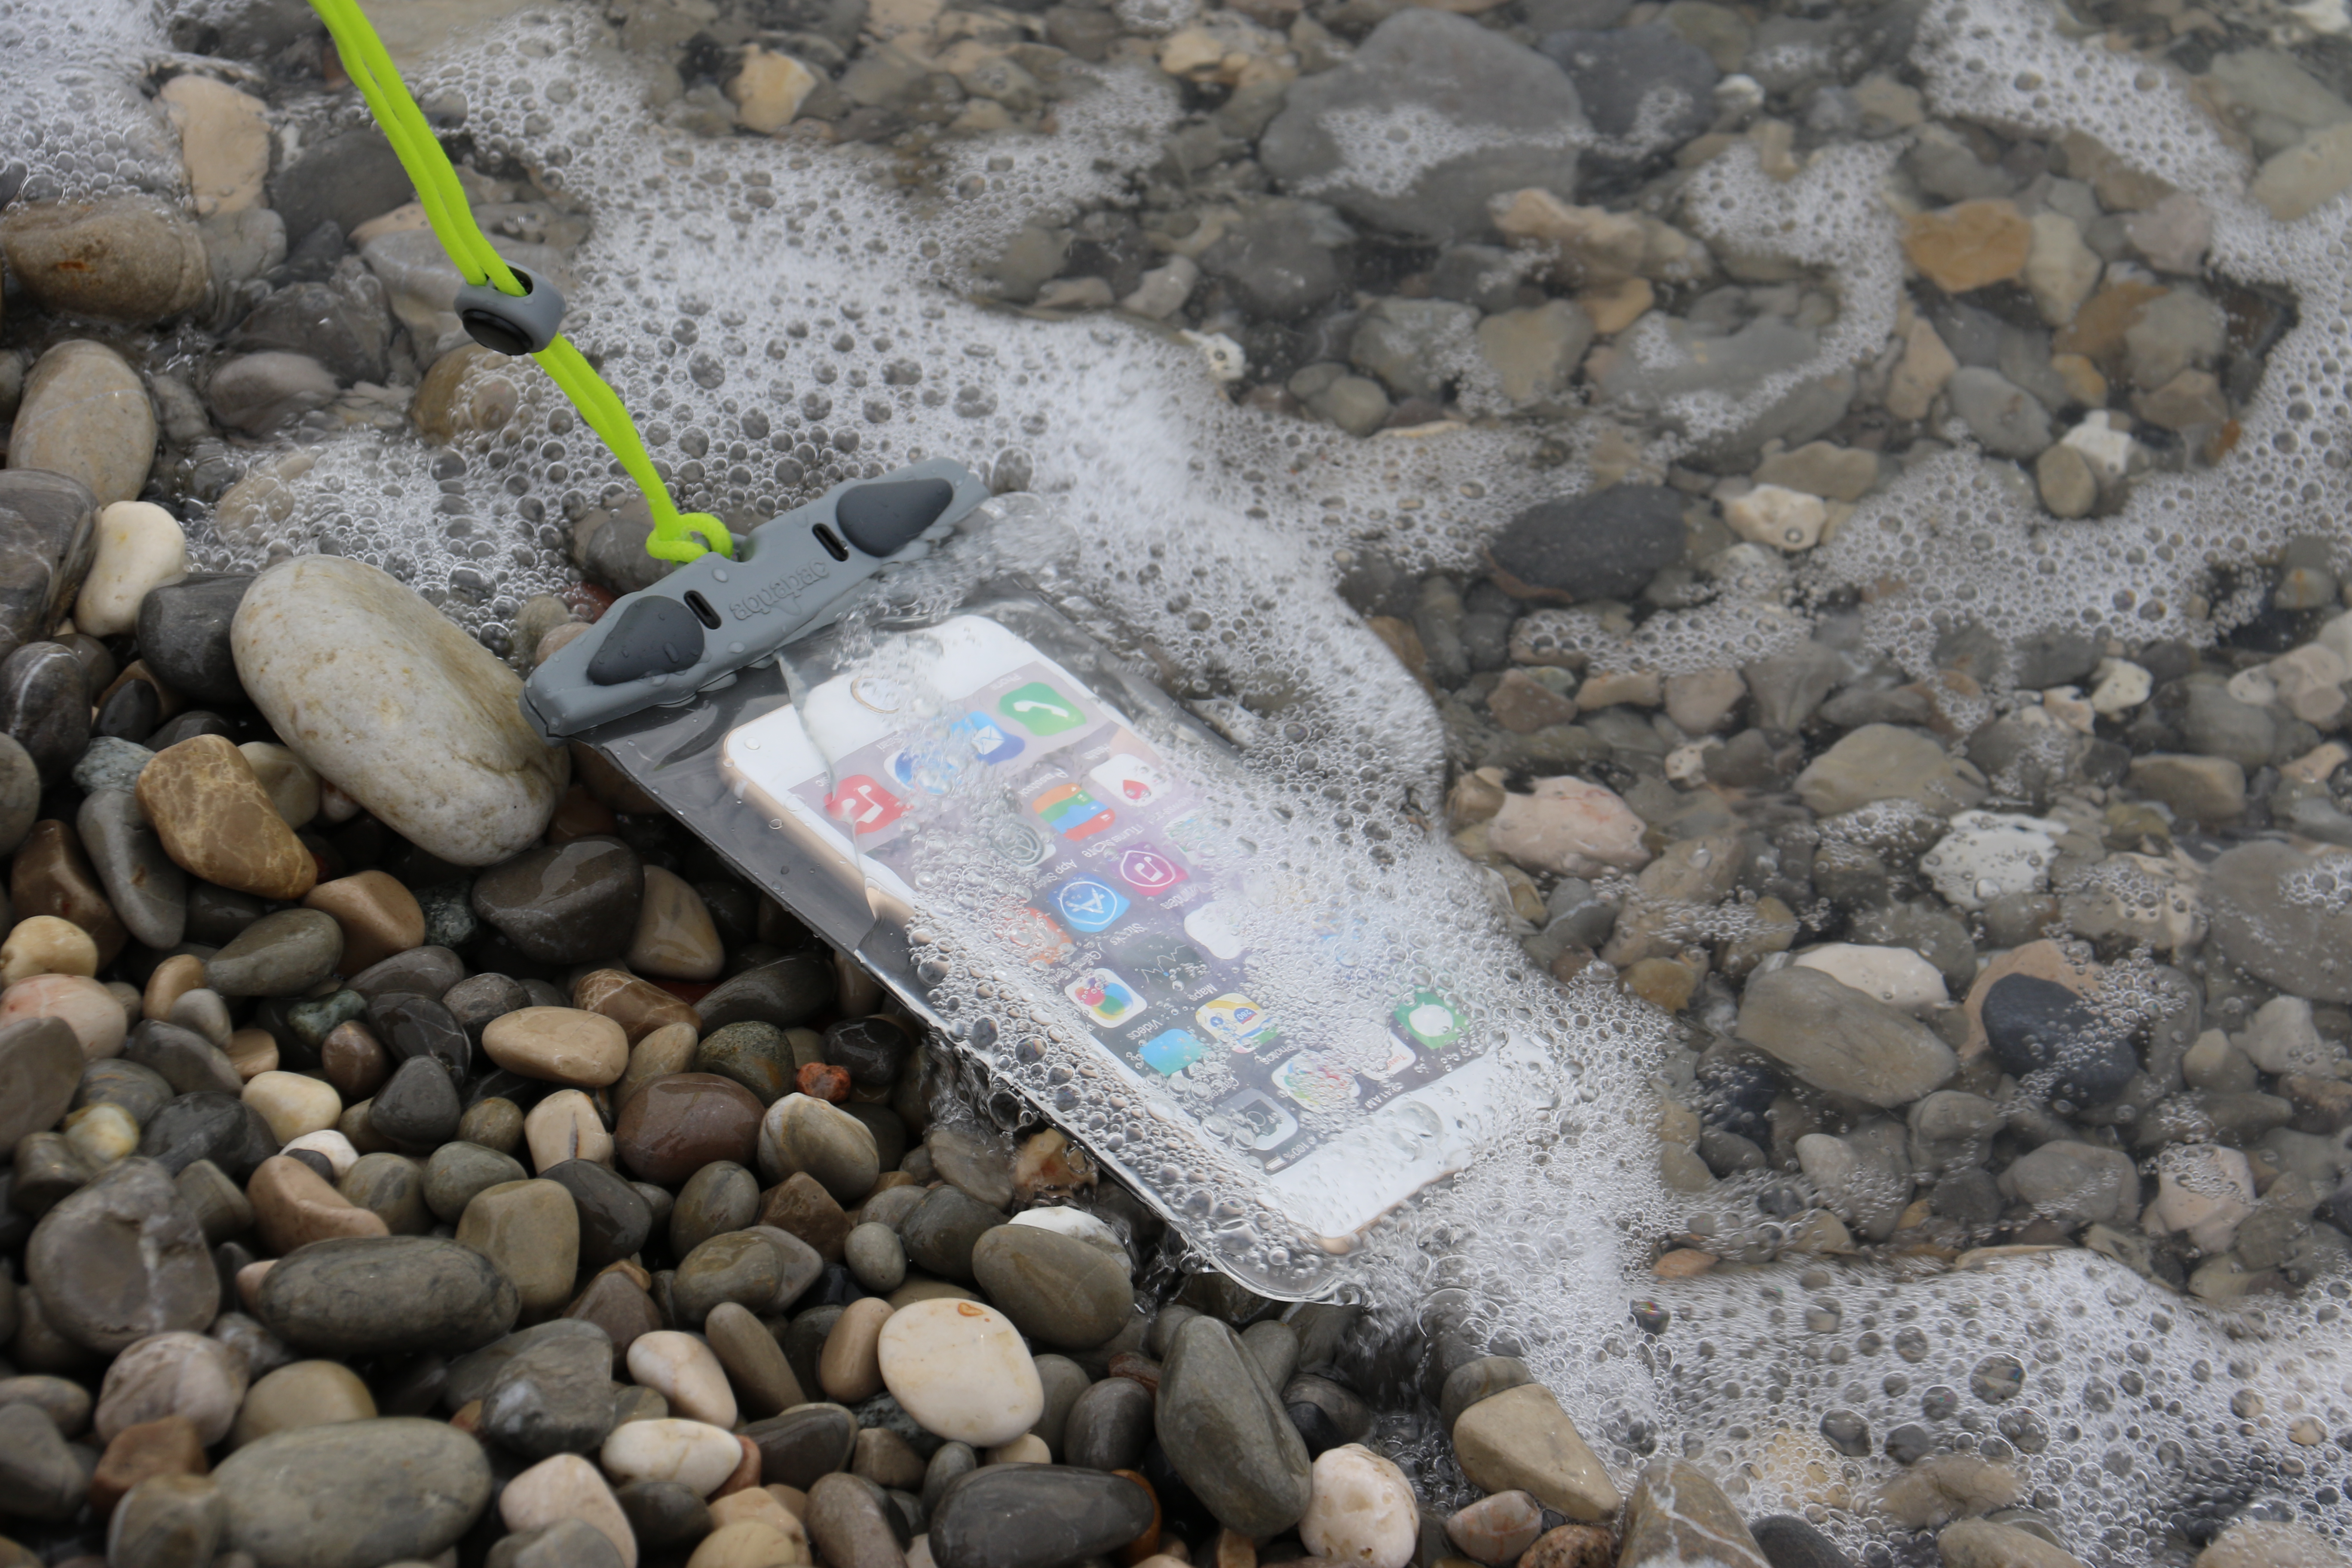 Aquapac™ 100% wasserdichte Smartphone Tasche Plus, Grey, Angebot! 32,- statt 42,-€, 